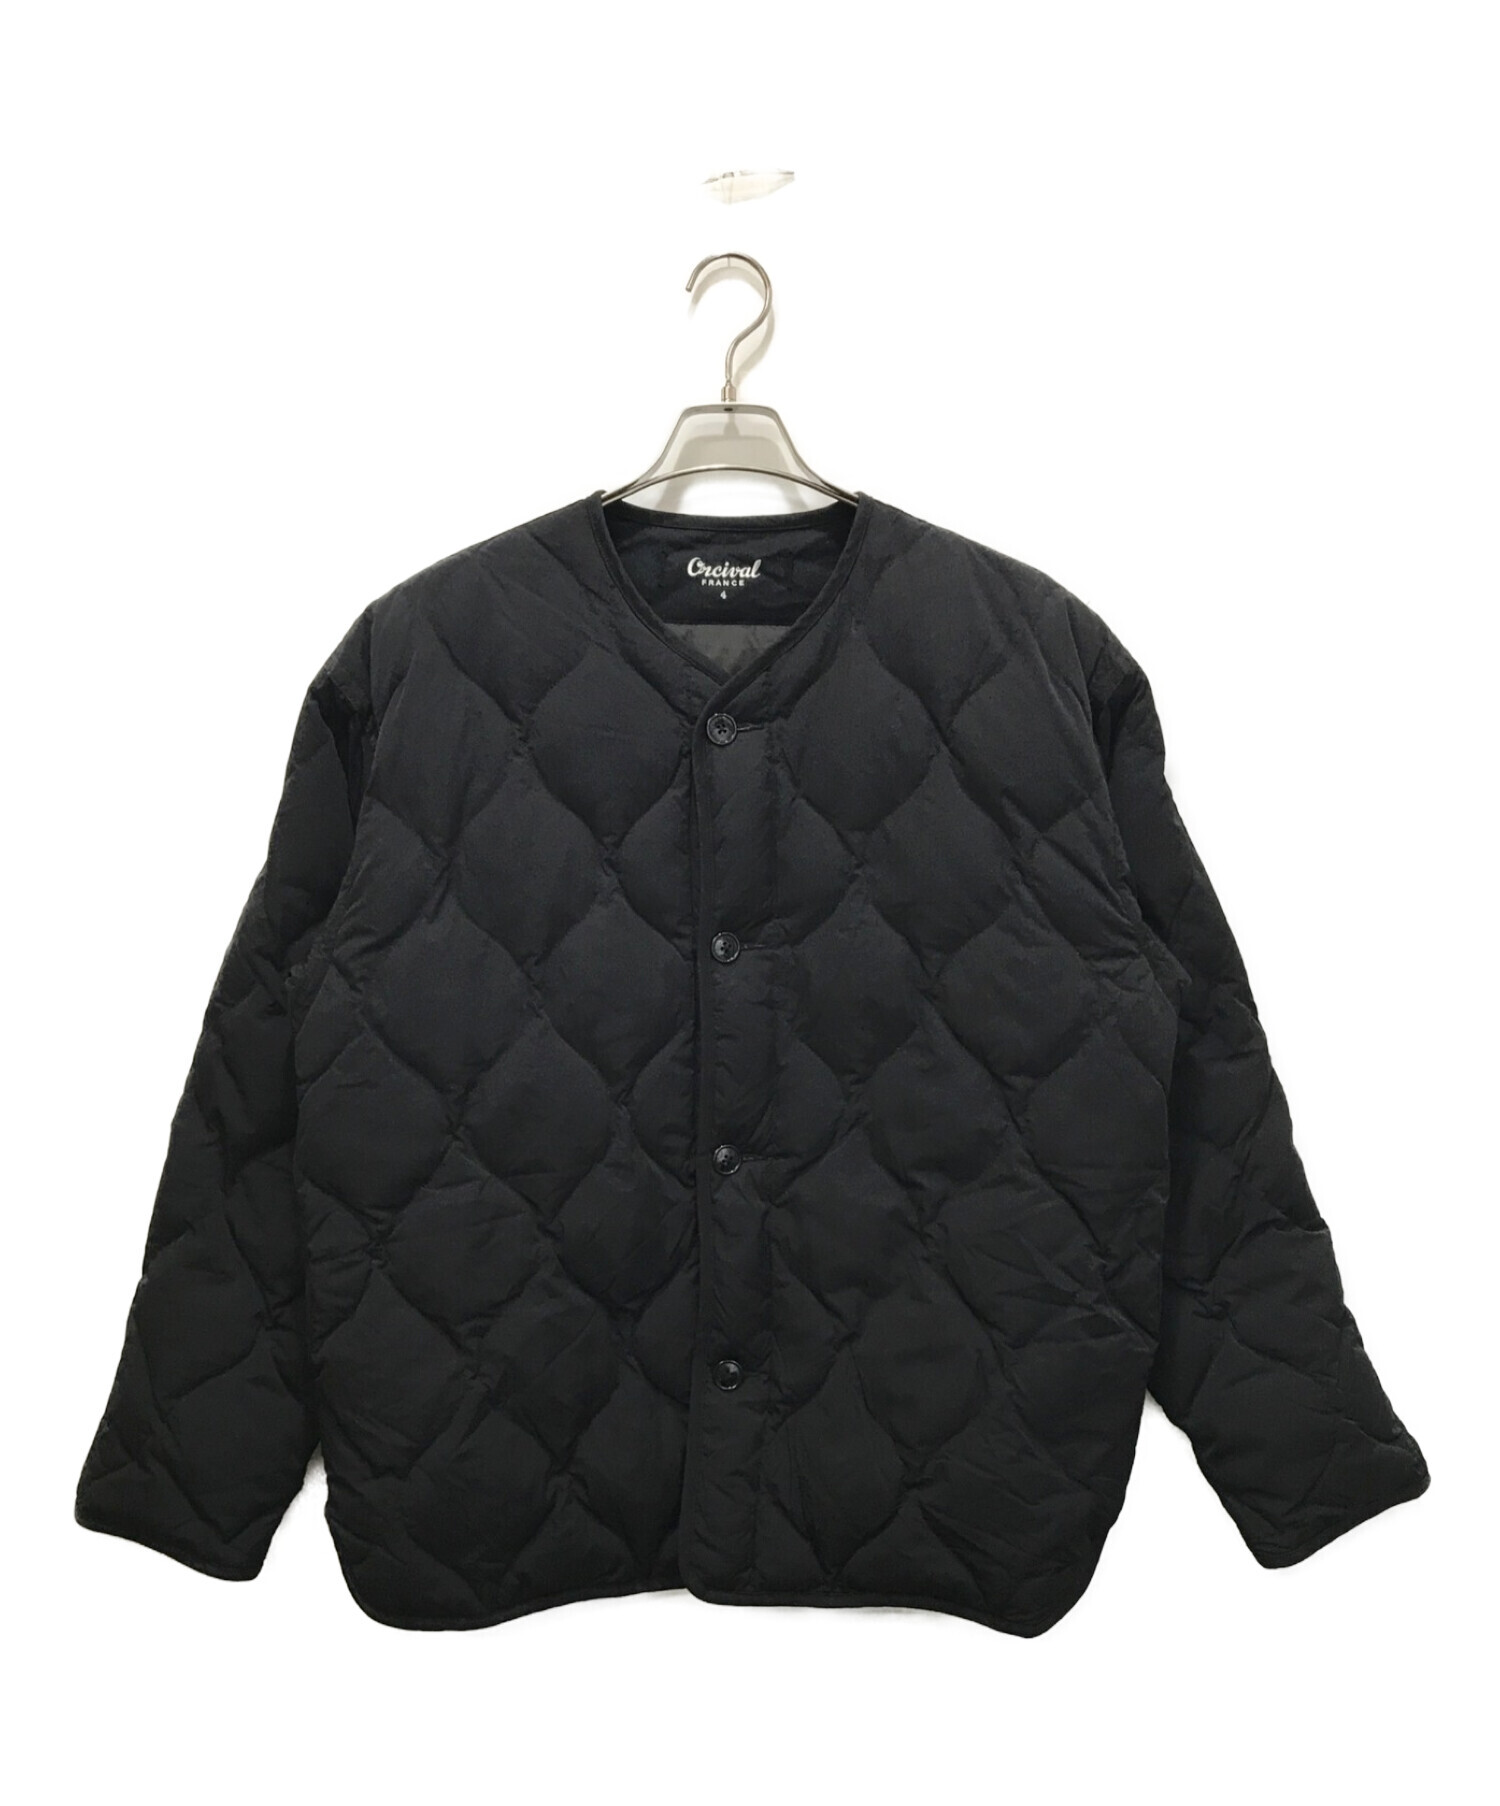 ORCIVAL (オーシバル) リモンタナイロンノーカラーキルティングジャケット ブラック サイズ:4